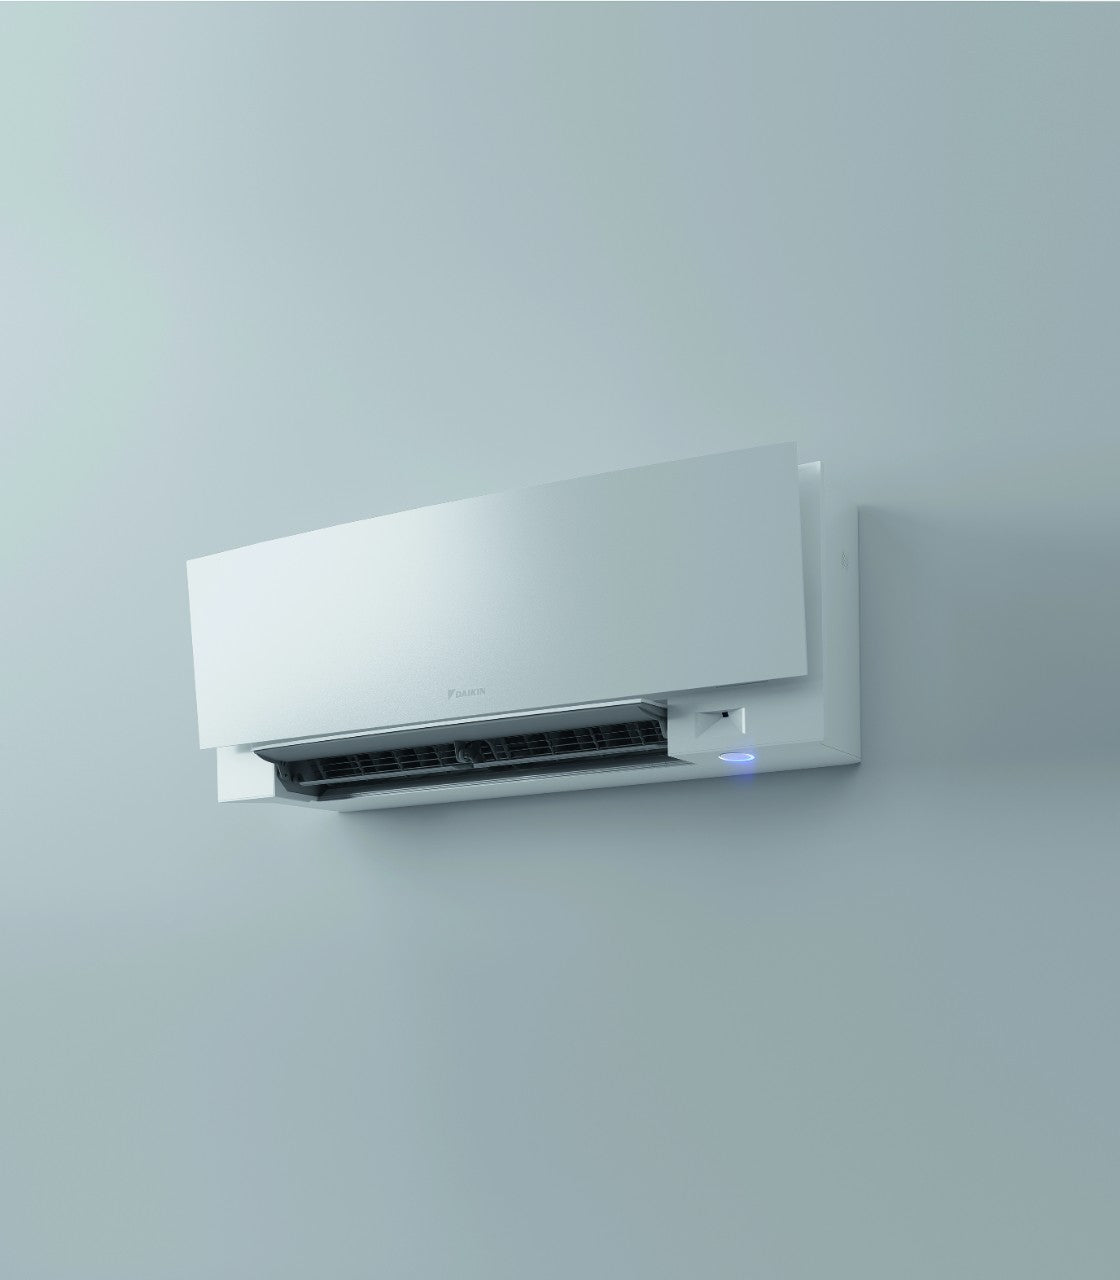 immagine-11-daikin-climatizzatore-condizionatore-daikin-bluevolution-inverter-serie-emura-white-iii-12000-btu-ftxj35aw-r-32-wi-fi-integrato-classe-a-garanzia-italiana-novita